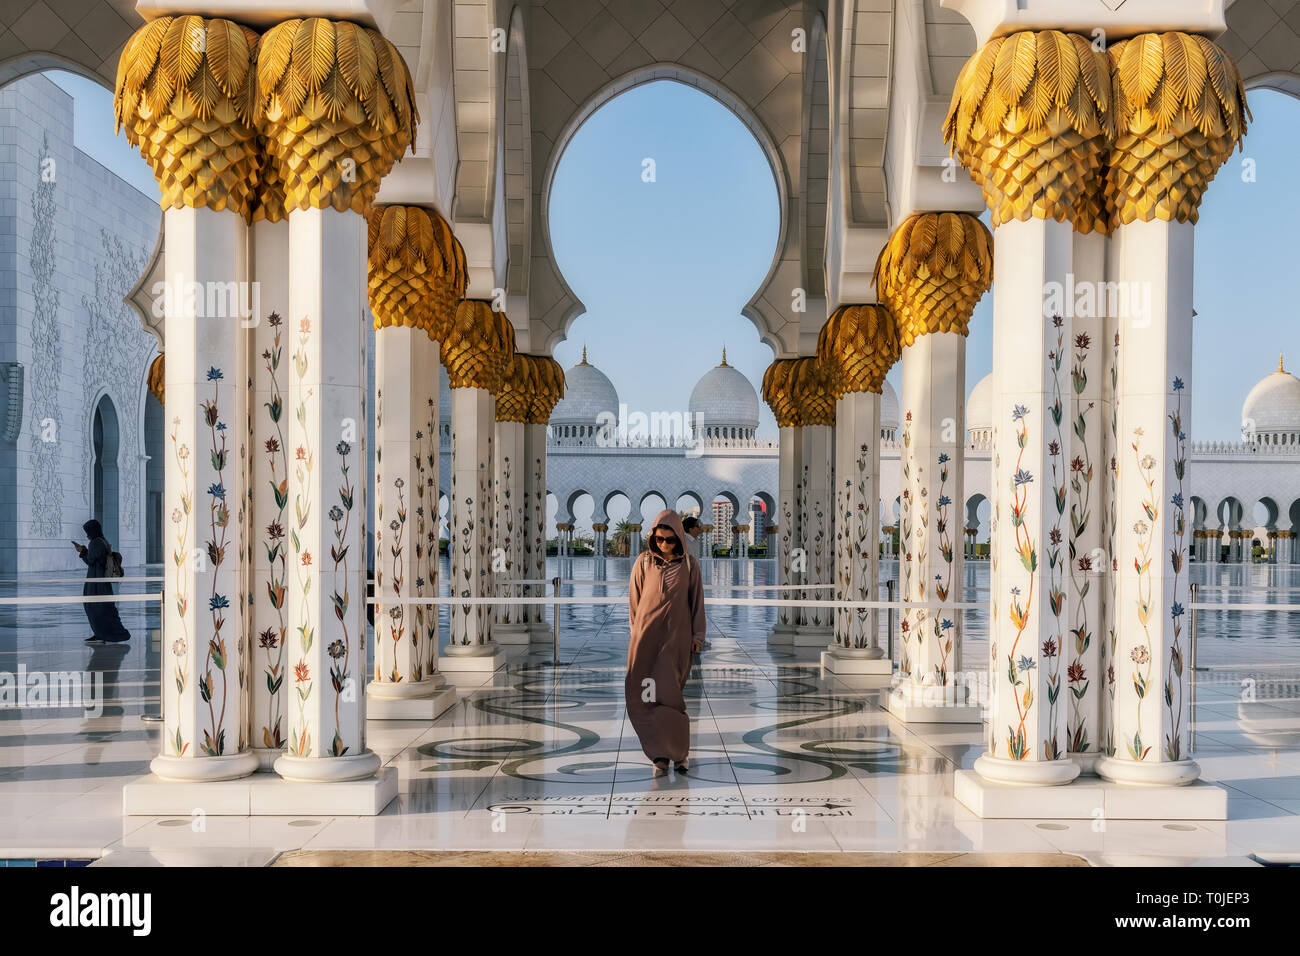 UAE/ABUDHABI 15 DEZ 2018 - Frau, die auf der Fassade der arabischen Moschee. Stockfoto